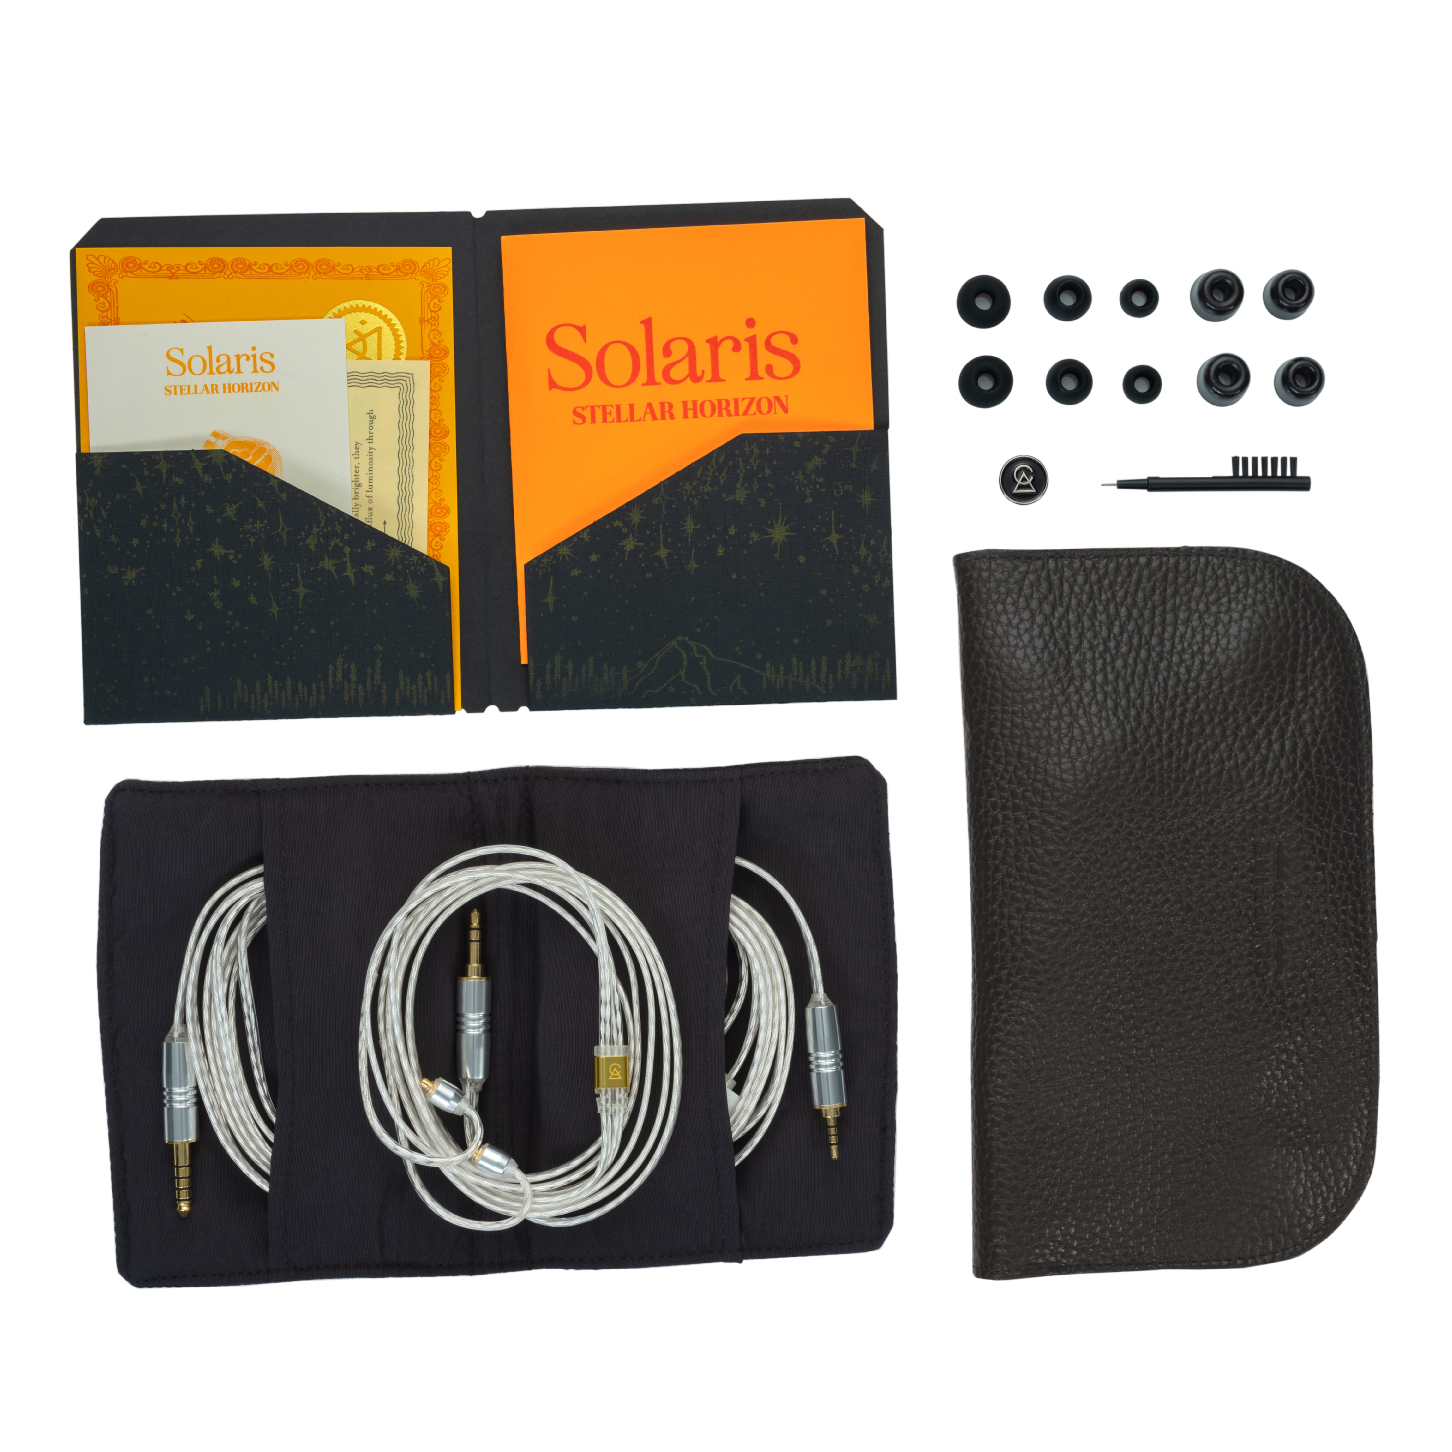 Solaris_SH_Accessories_1452x1452